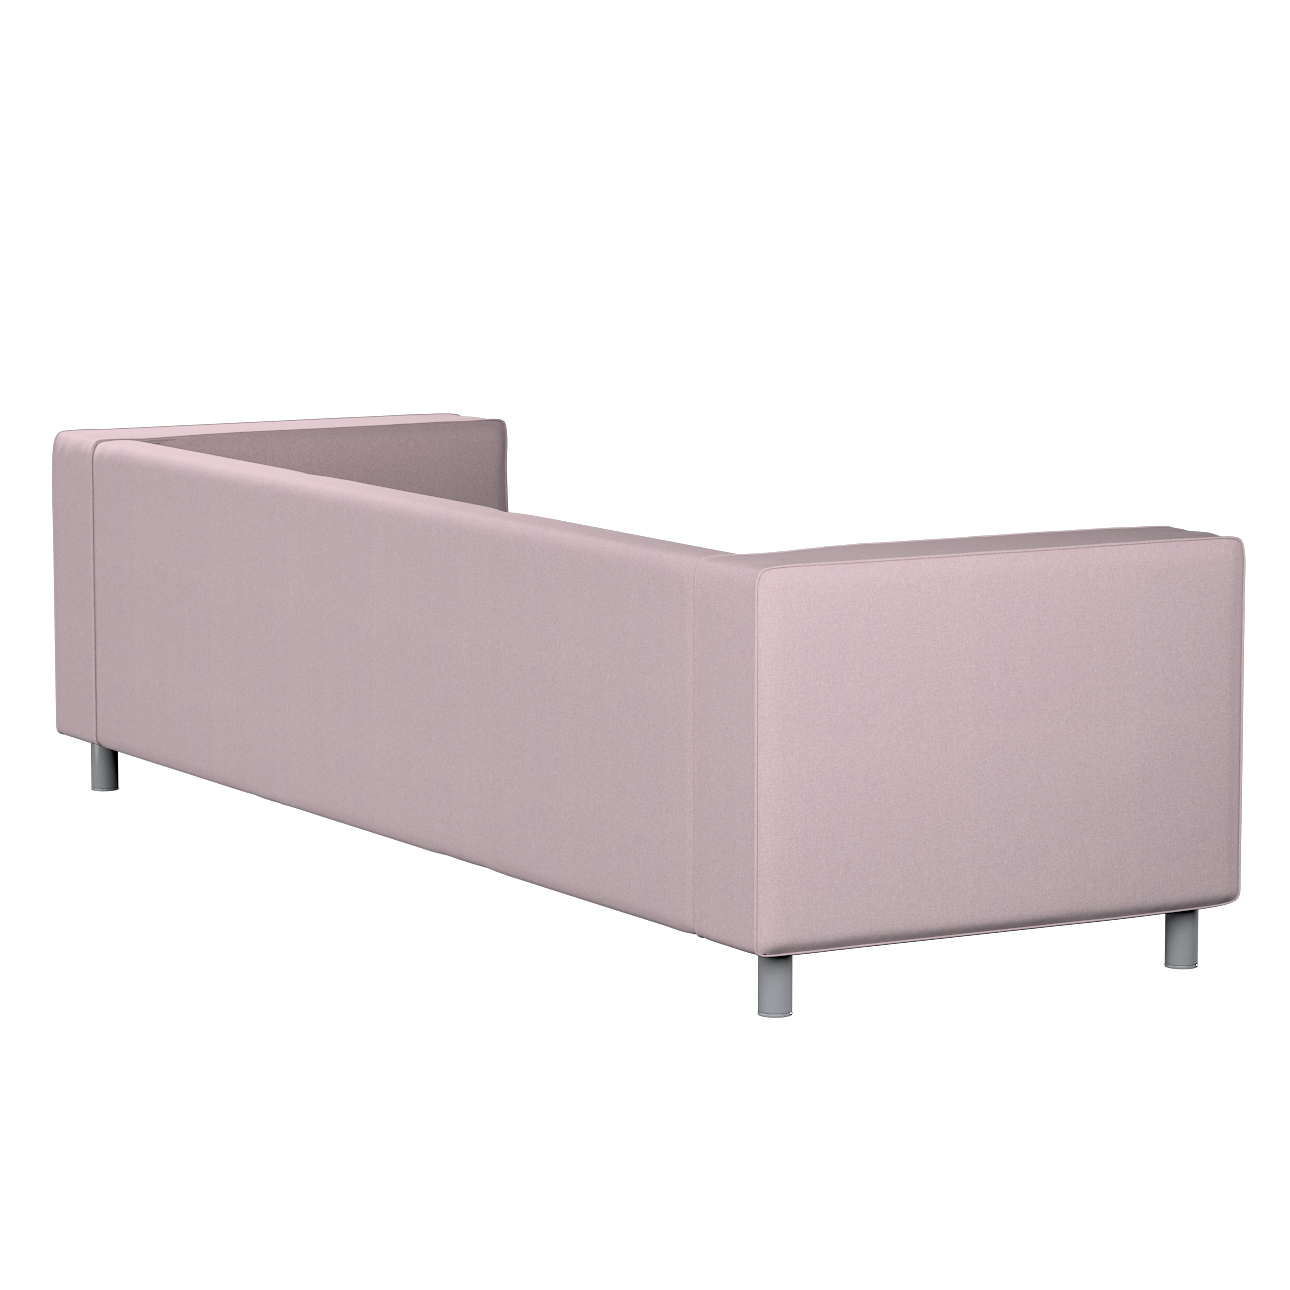 Bezug für Klippan 4-Sitzer Sofa, rosa, Bezug für Klippan 4-Sitzer, Amsterda günstig online kaufen